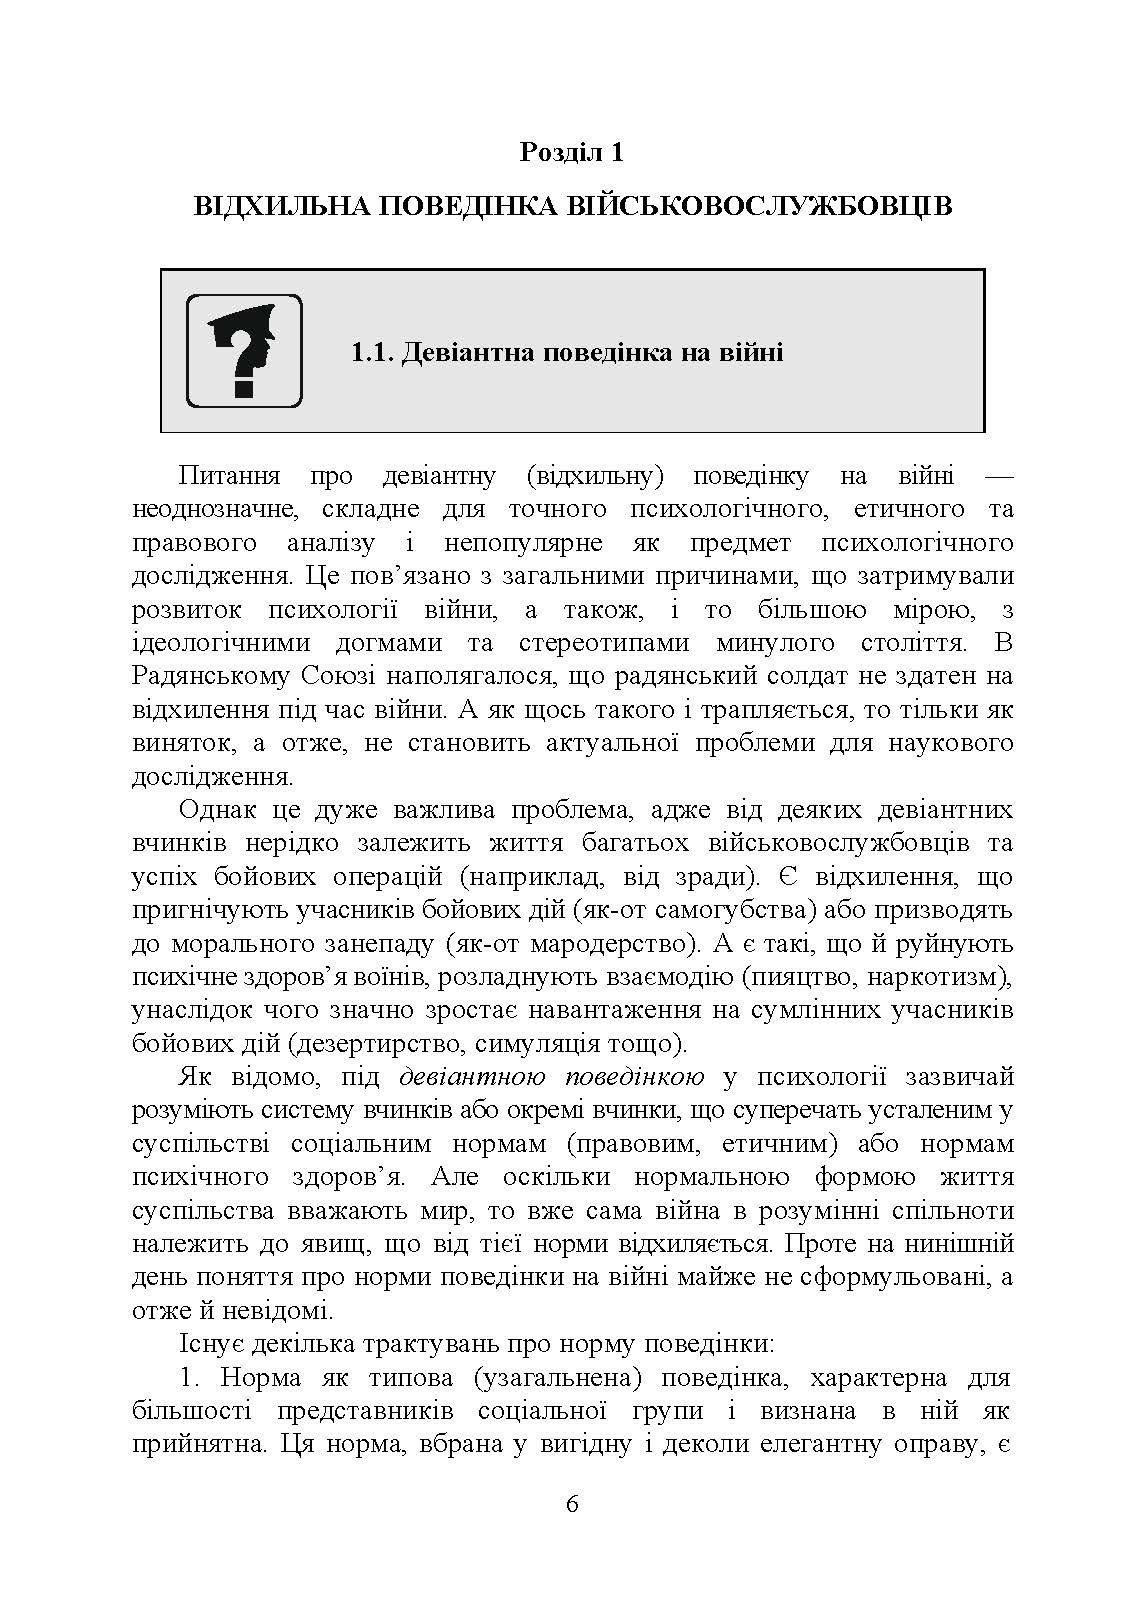 Профілактика відхильної поведінки у військовослужбовців. Автор — А. М. Романишин, Т. М. Мацевко. 